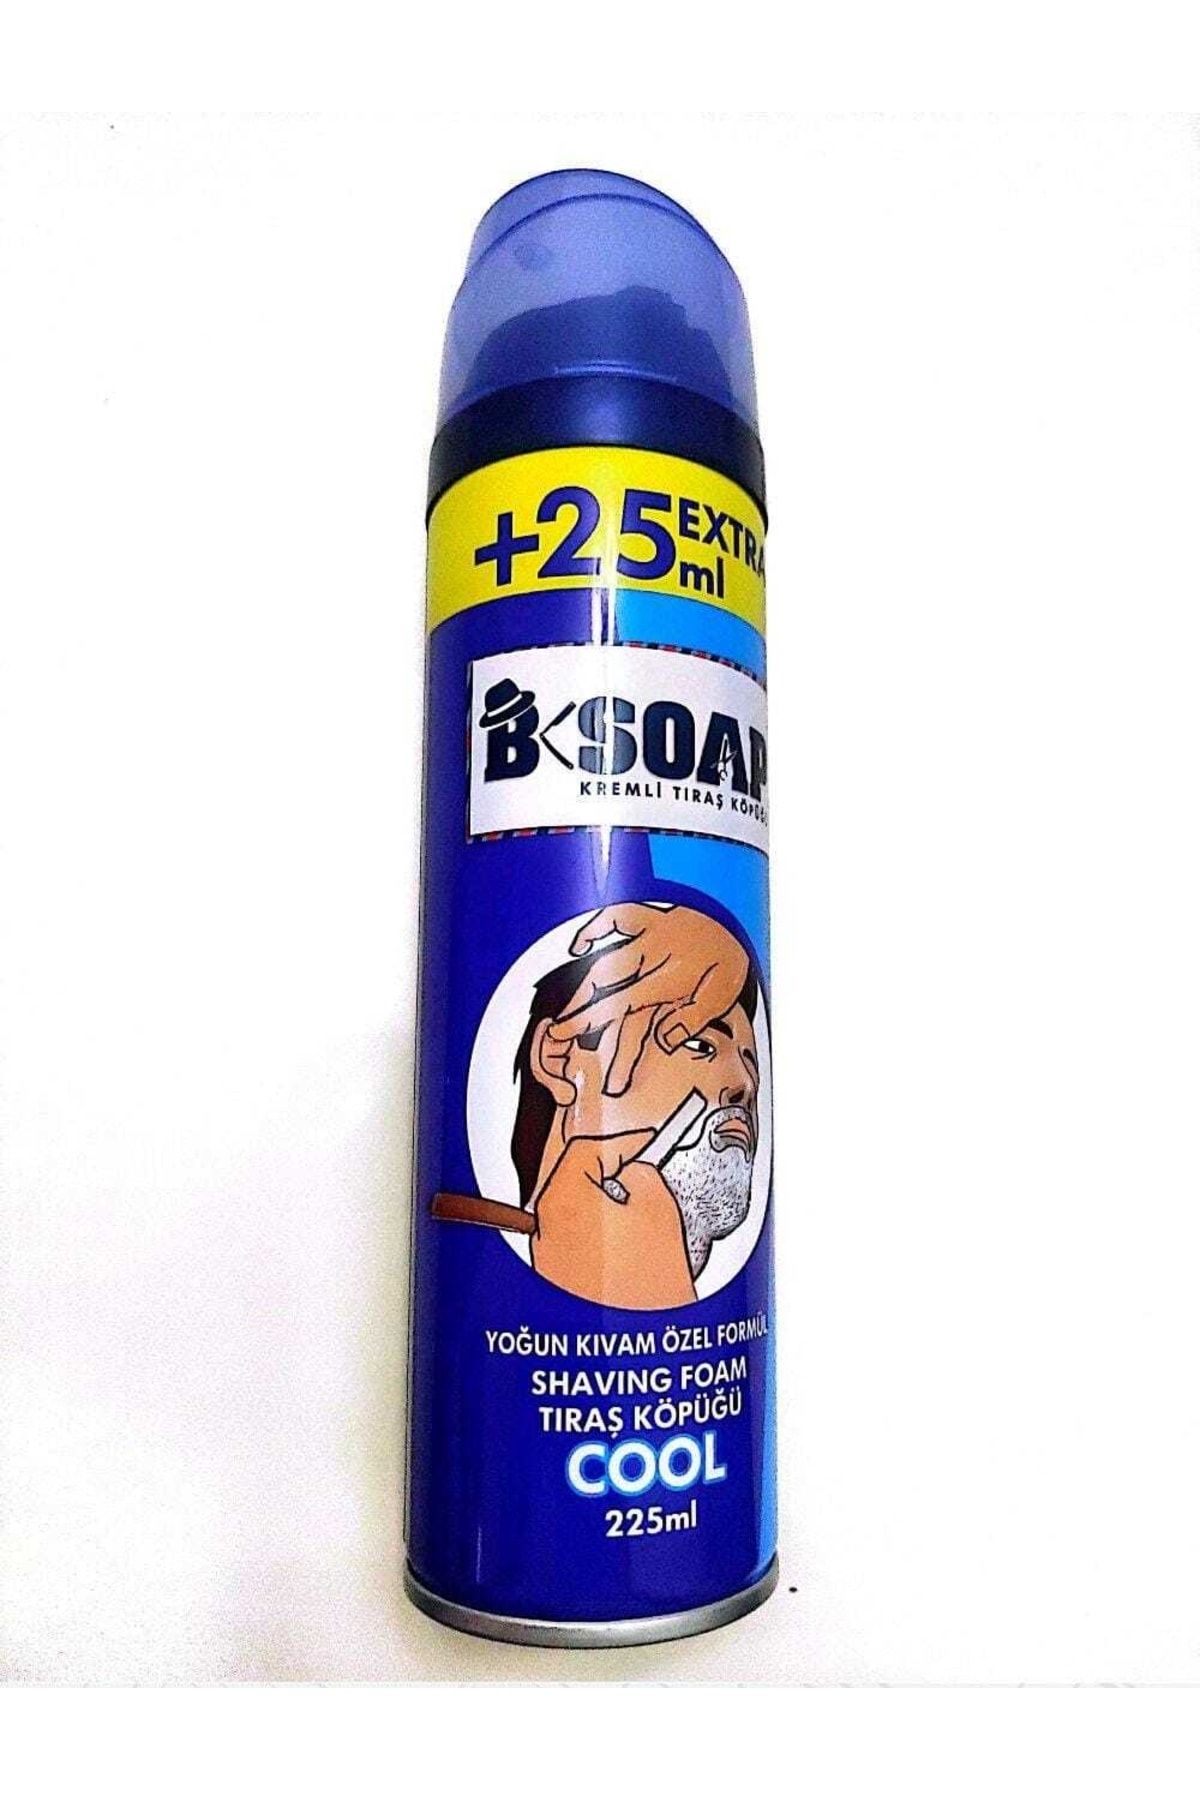 B-Soap Kremli Tıraş Köpüğü Cool 225 ml